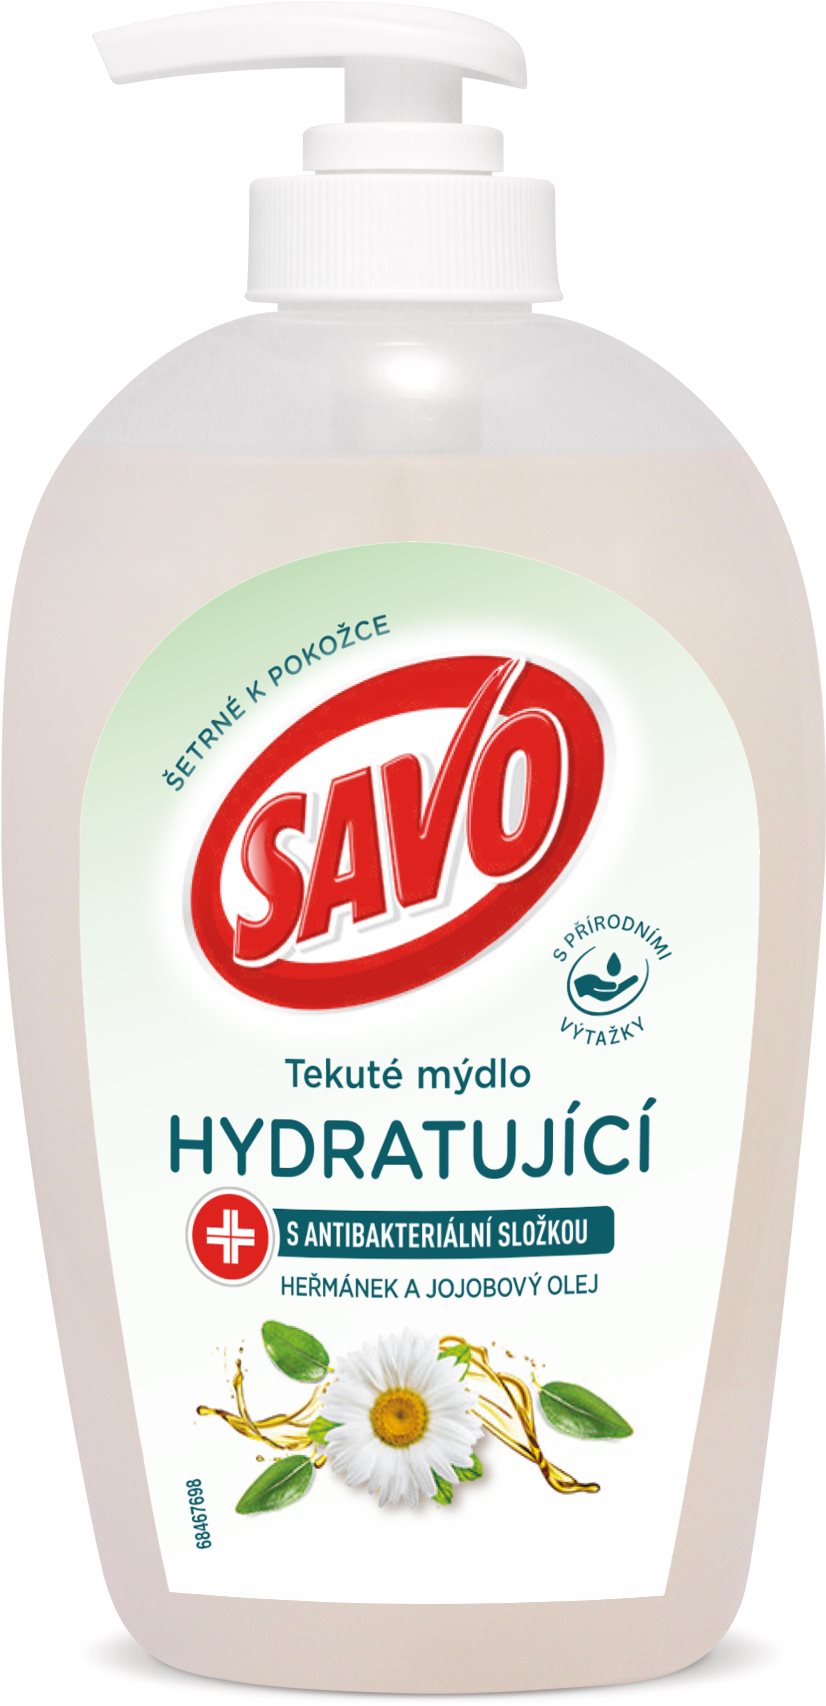 SAVO folyékony hidratáló szappan antibakteriális összetevővel rendelkező kamilla- és jojobaolajjal 2